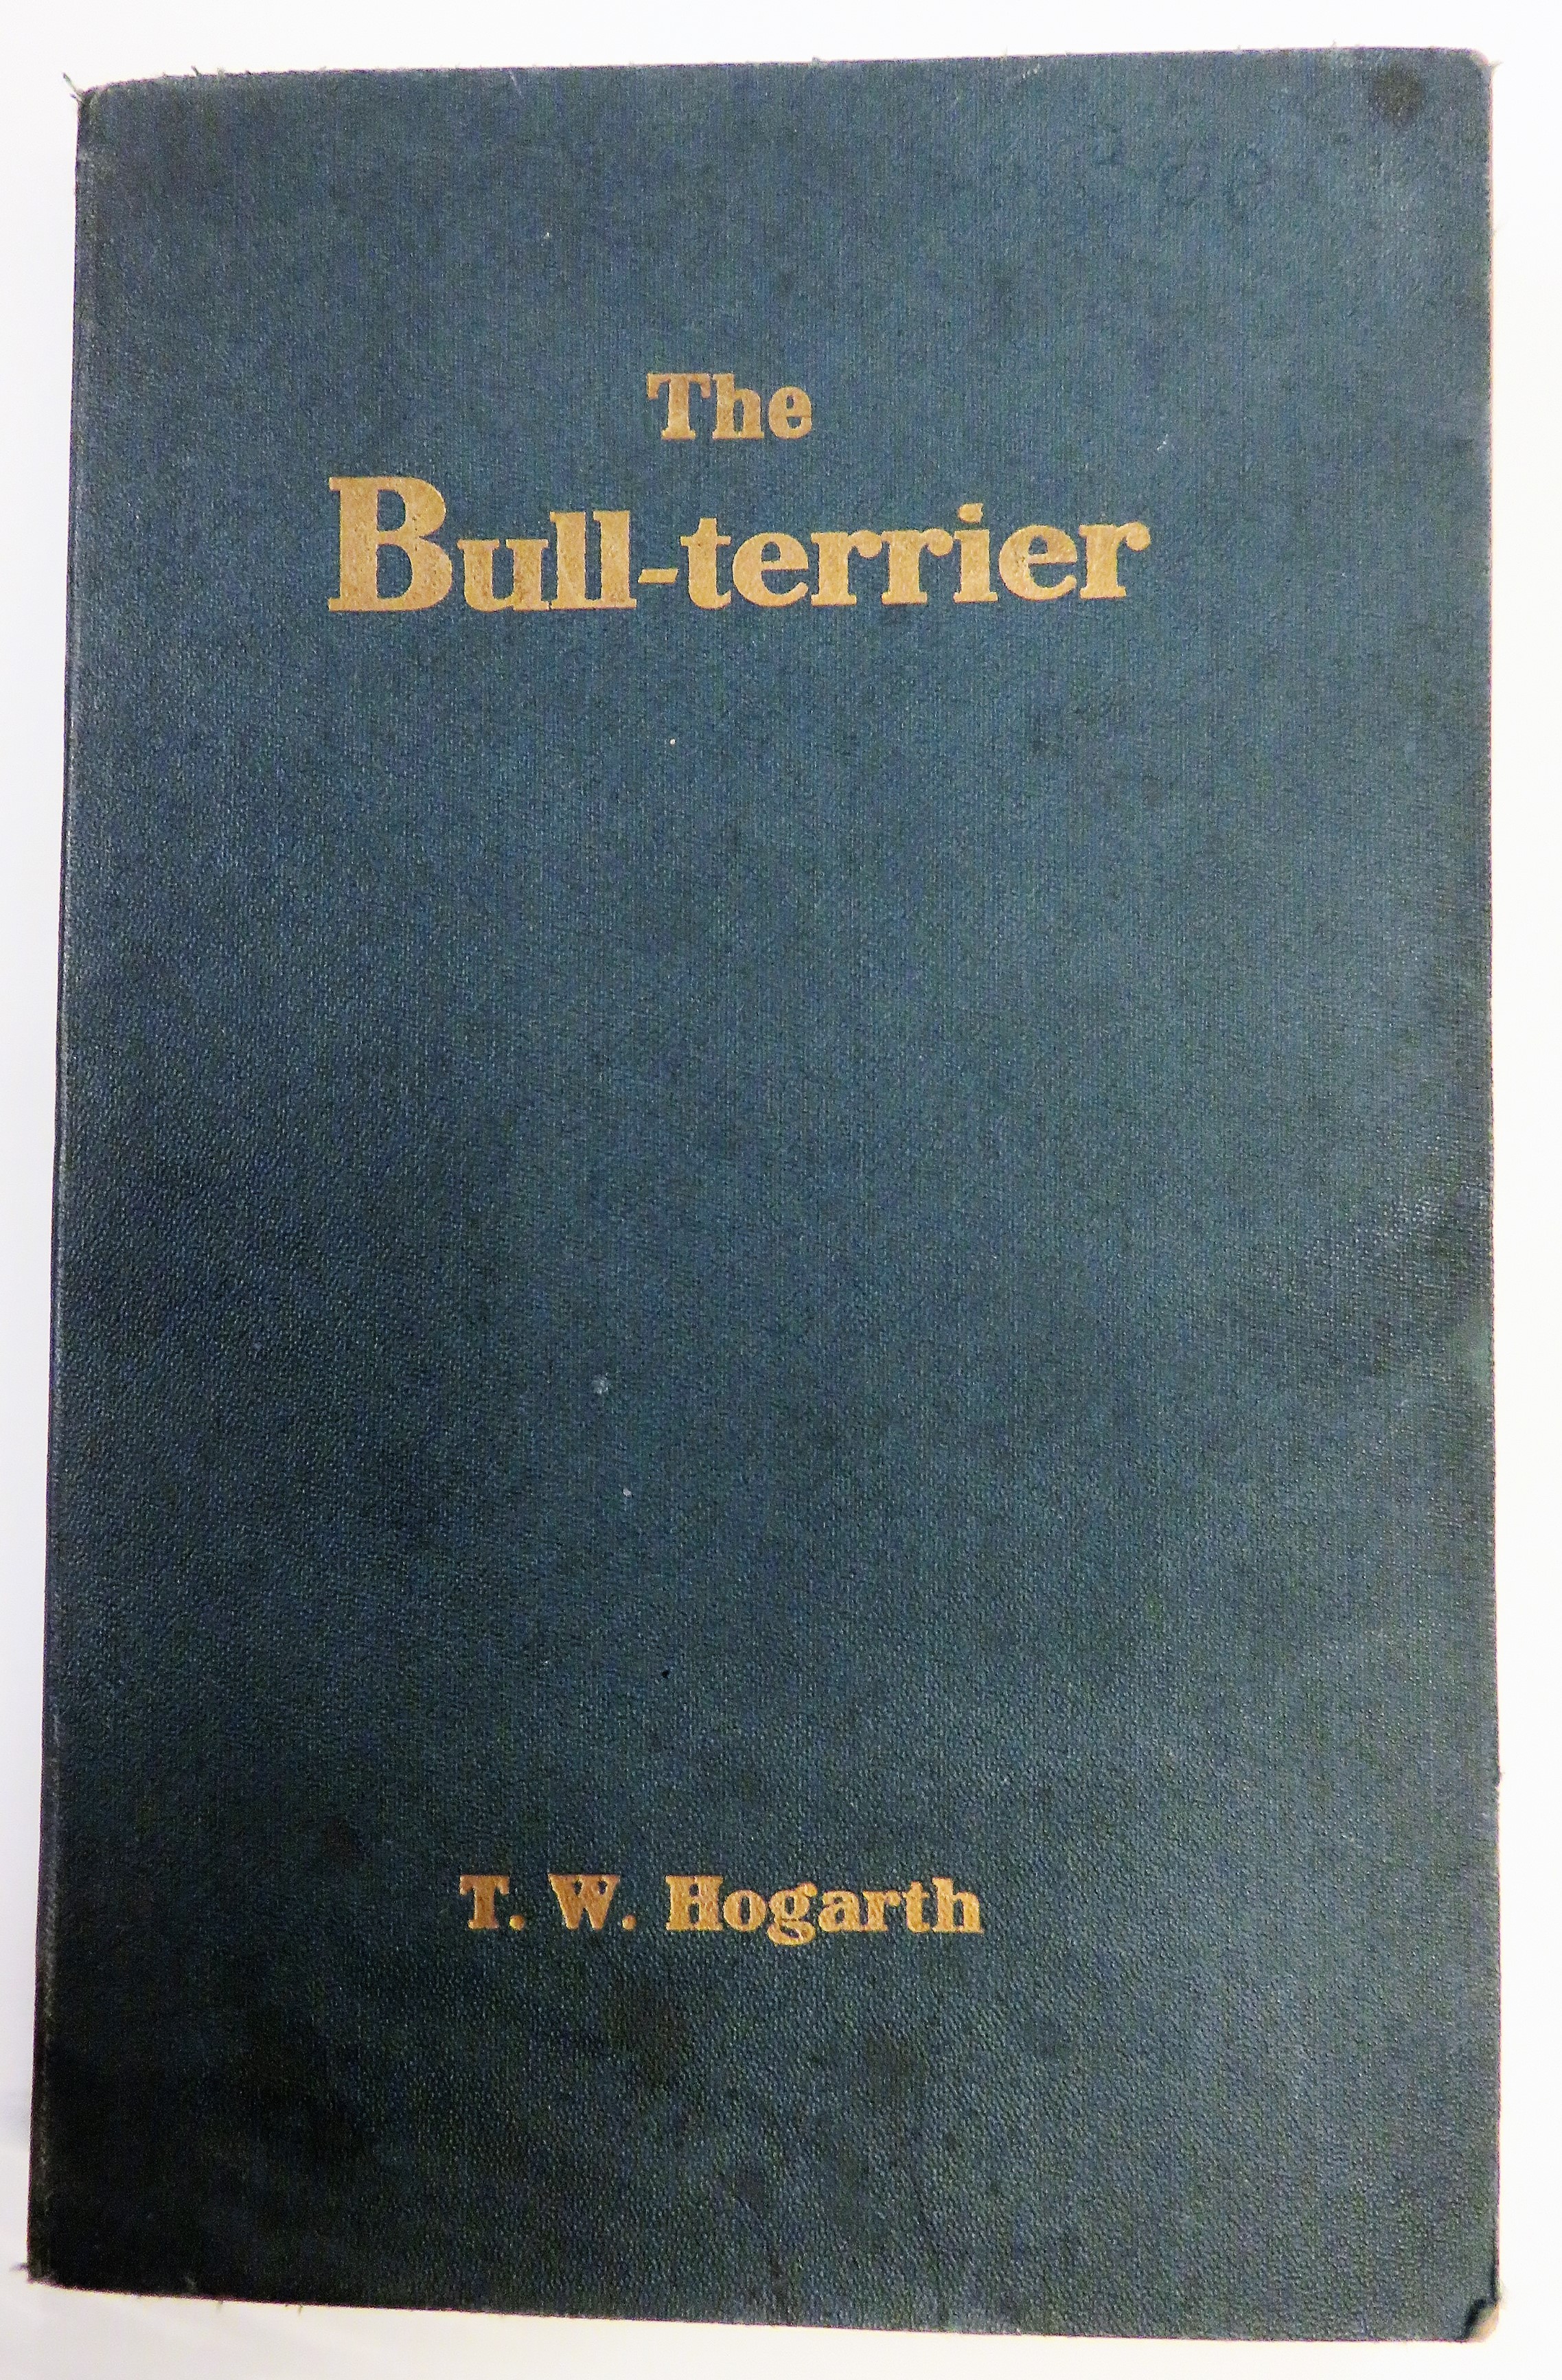 The Bull Terrierr